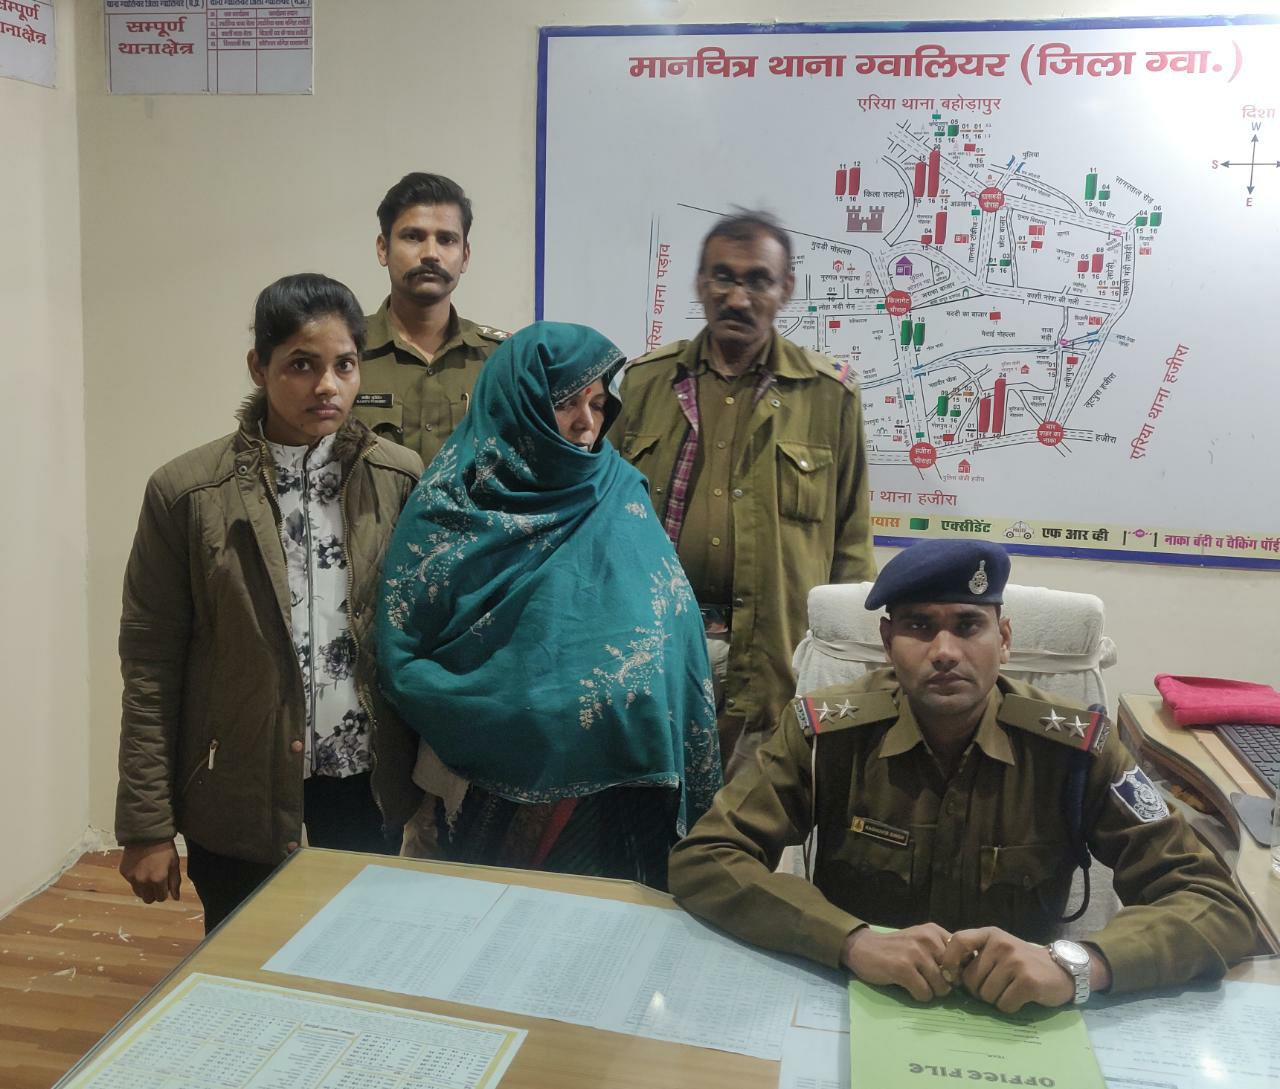 नशे का कारोबार करने वाली महिला गिरफ्तार, हजारों रूपये का गांजा बरामद | New India Times